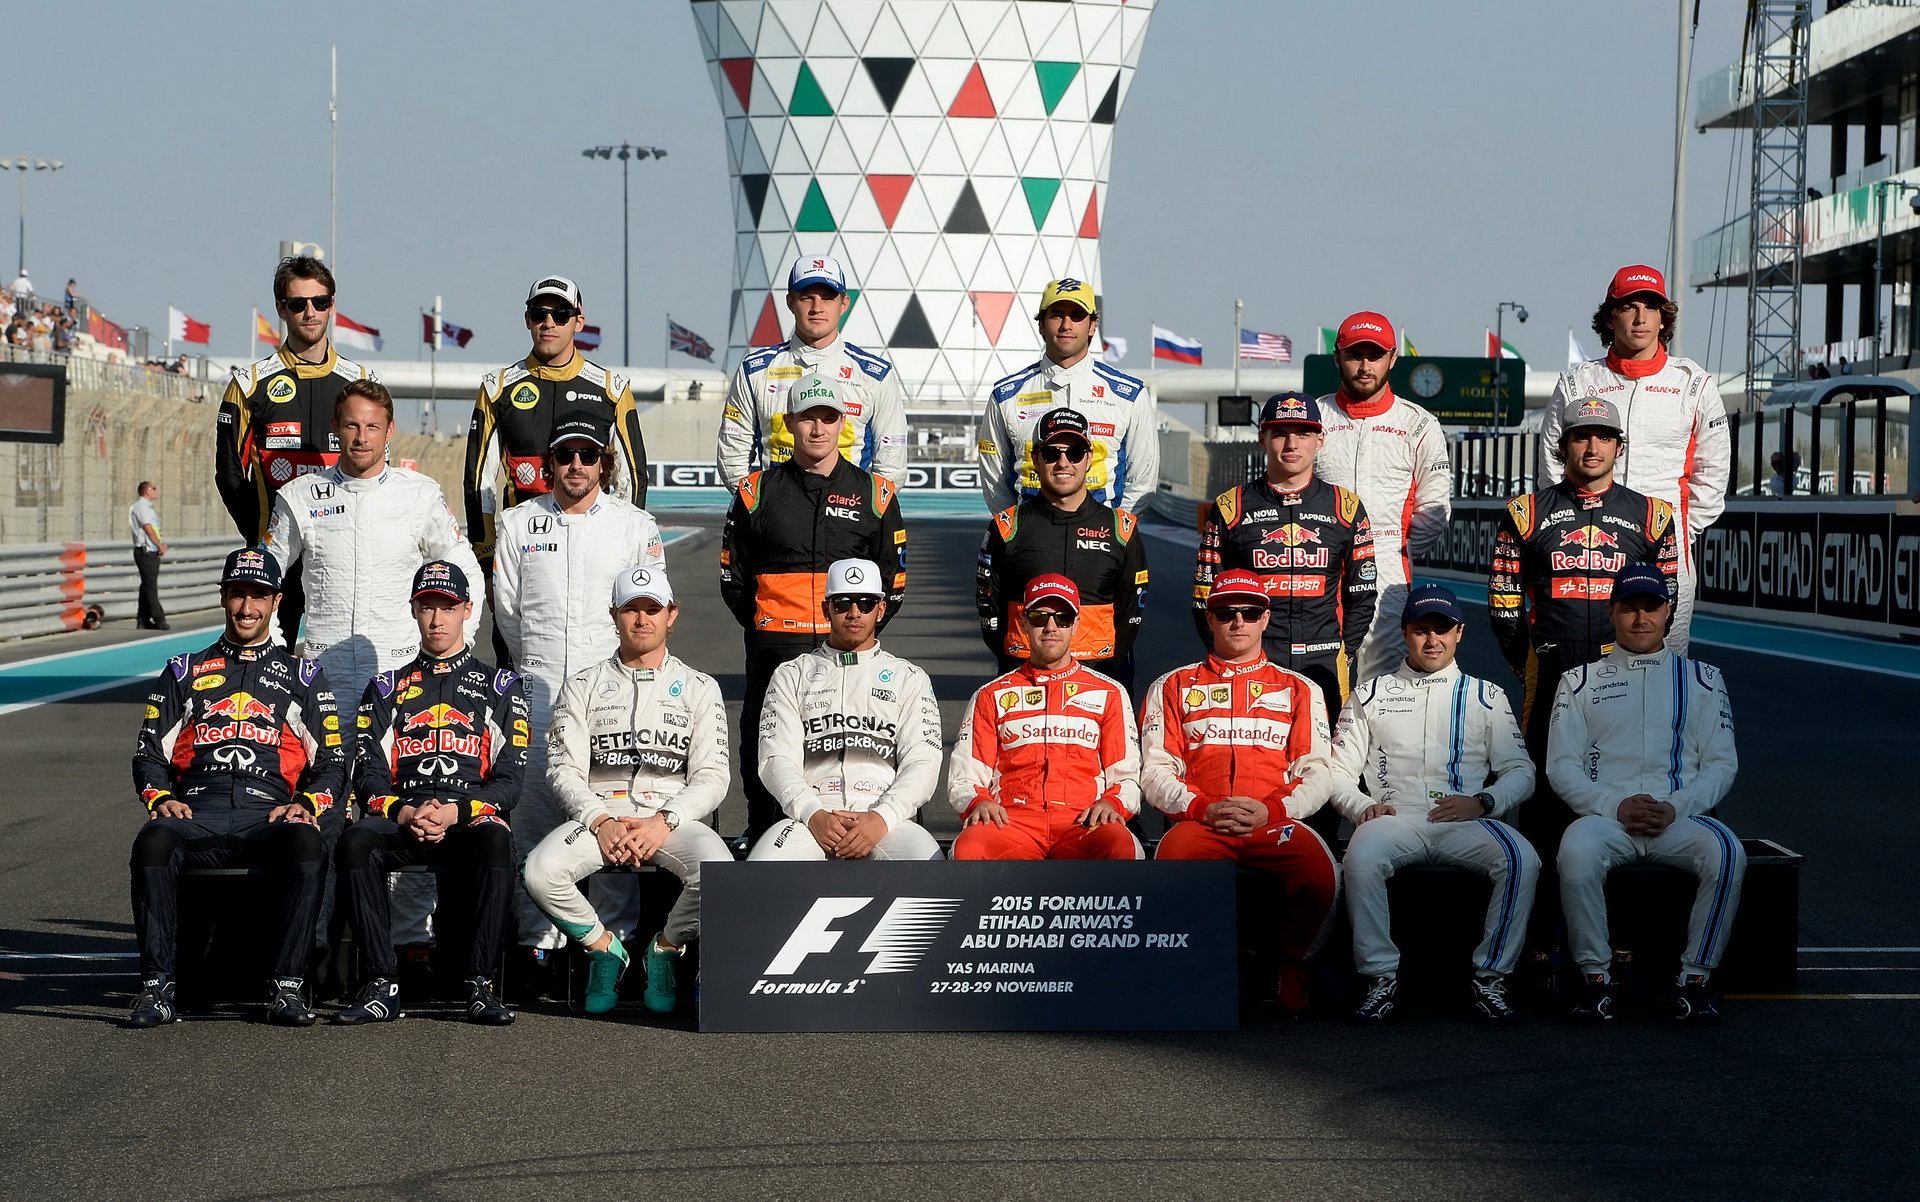 Skupinová fotografie pilotů Formule 1 - Pastor Maldonado je v ní podle Marka Webbera pouze do počtu